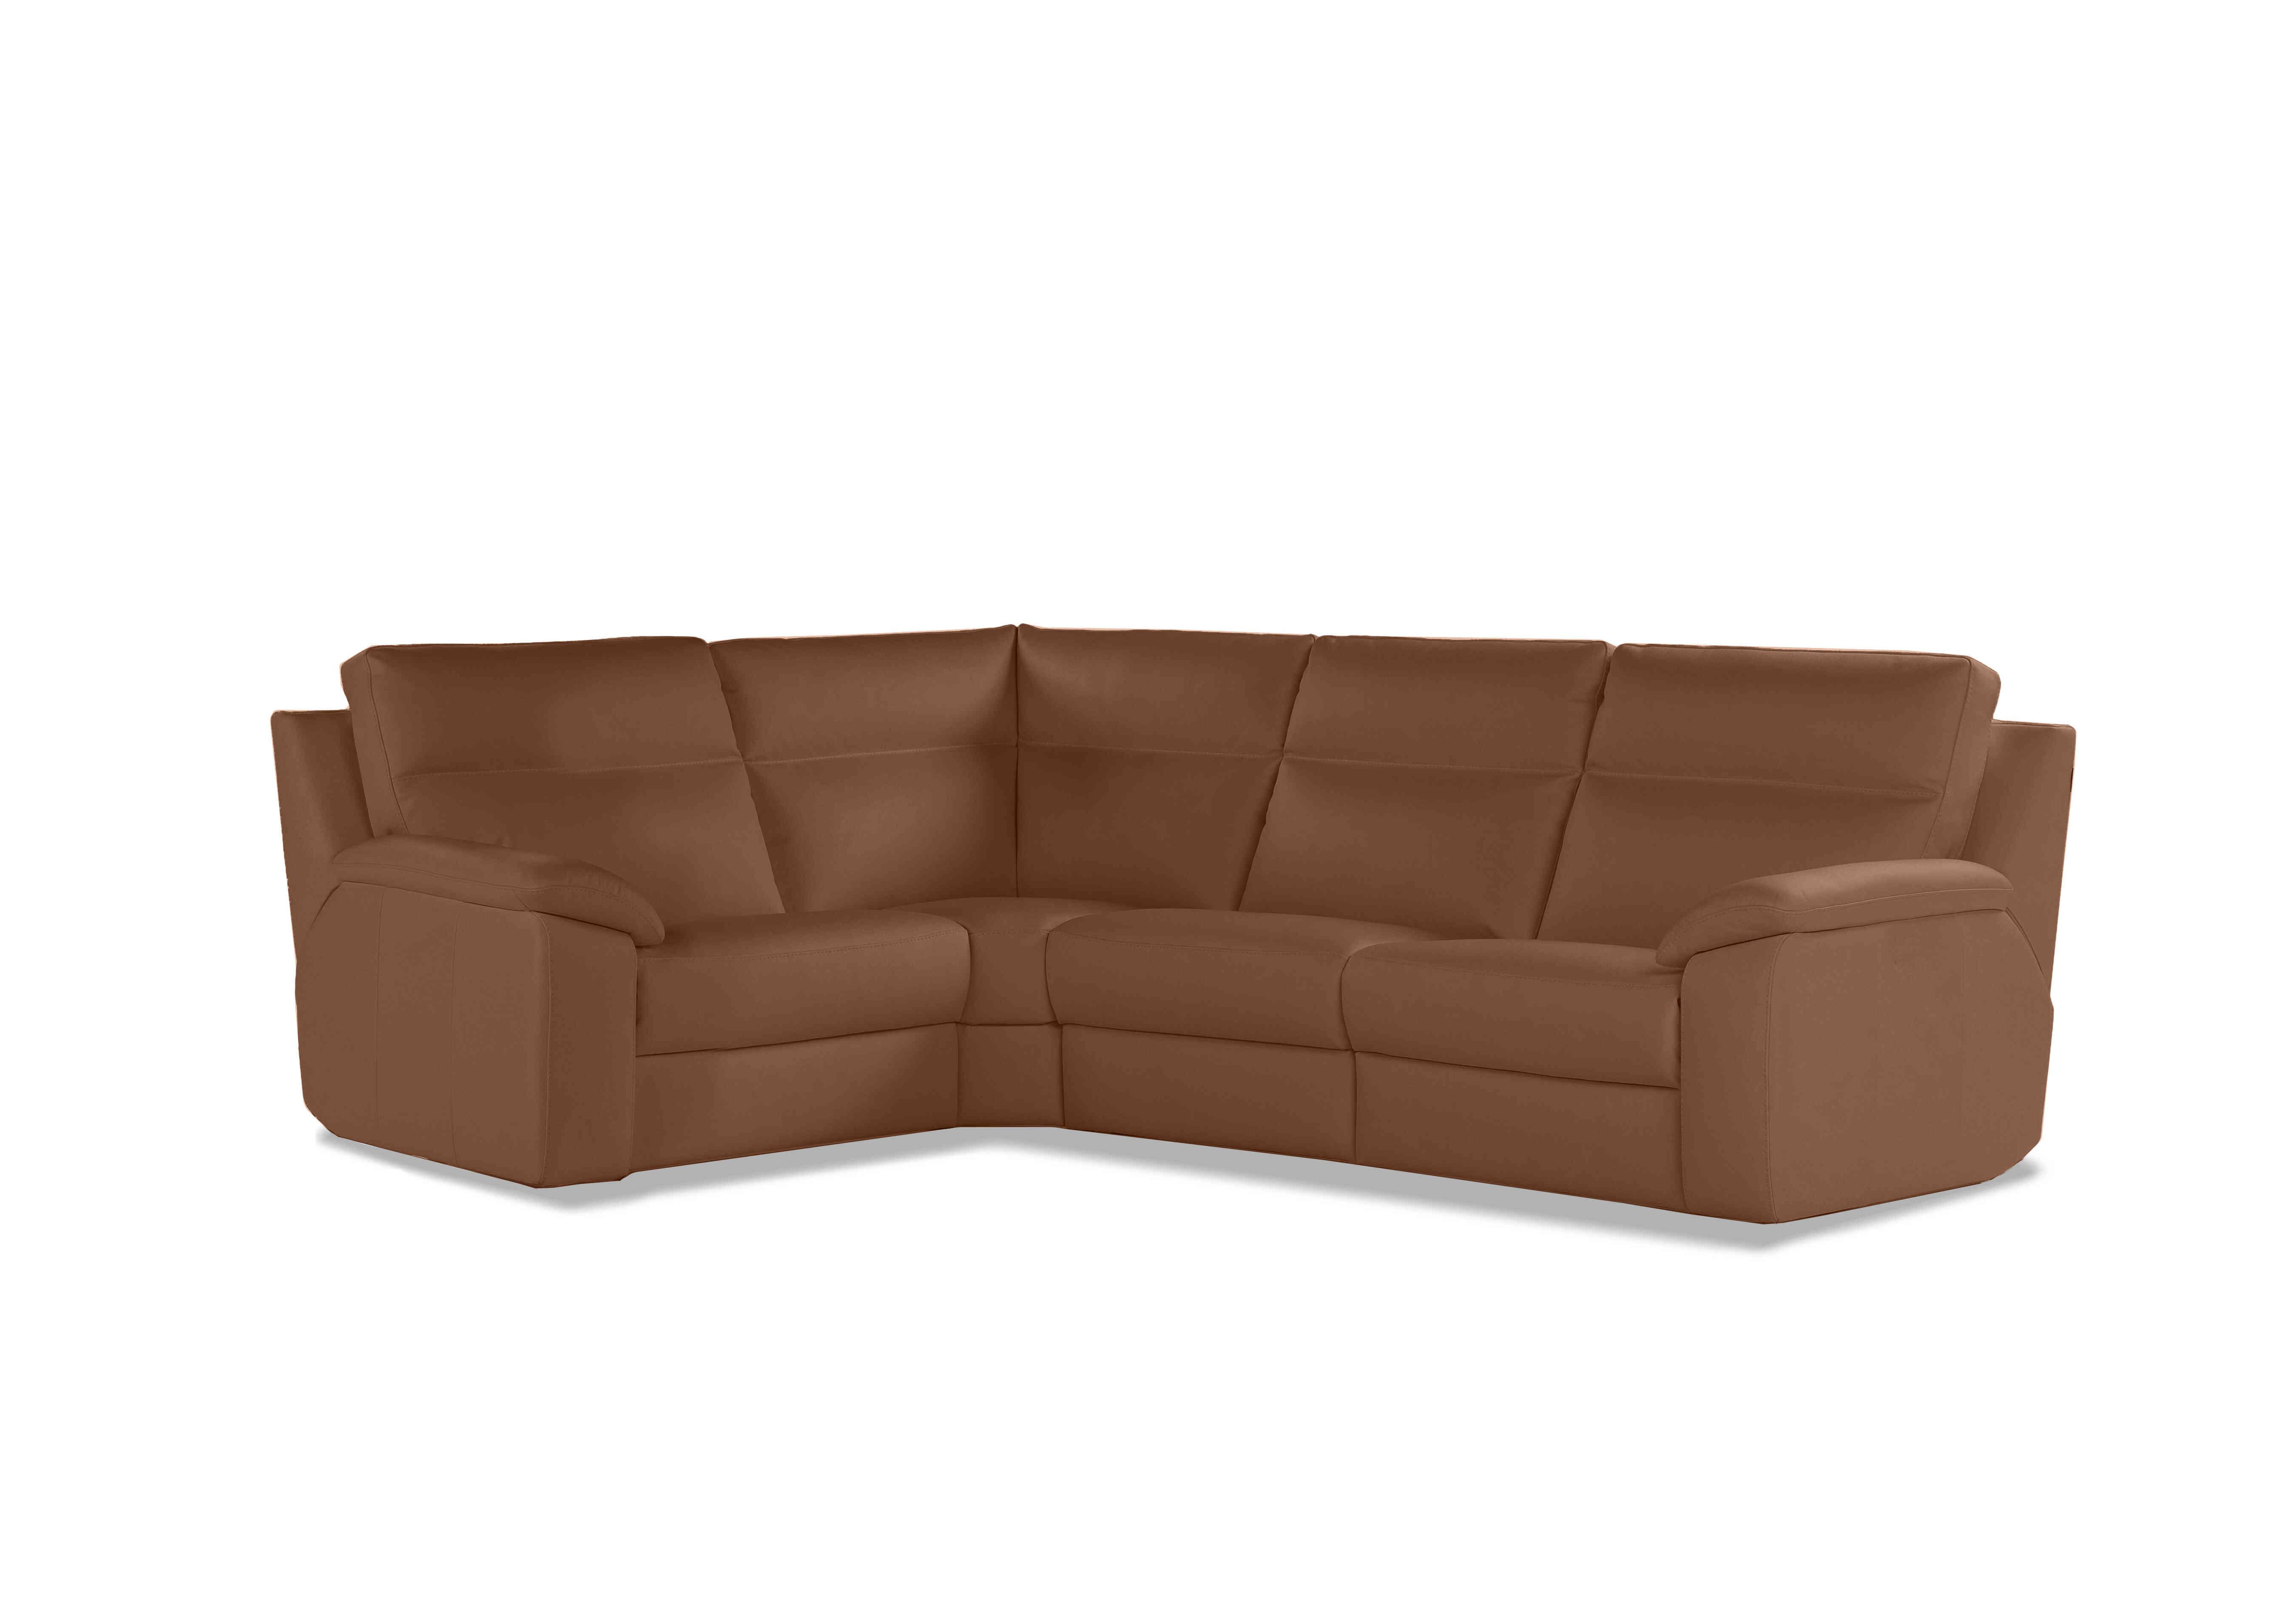 Pepino Small Leather Corner Sofa in 363 Torello Cognac on Furniture Village